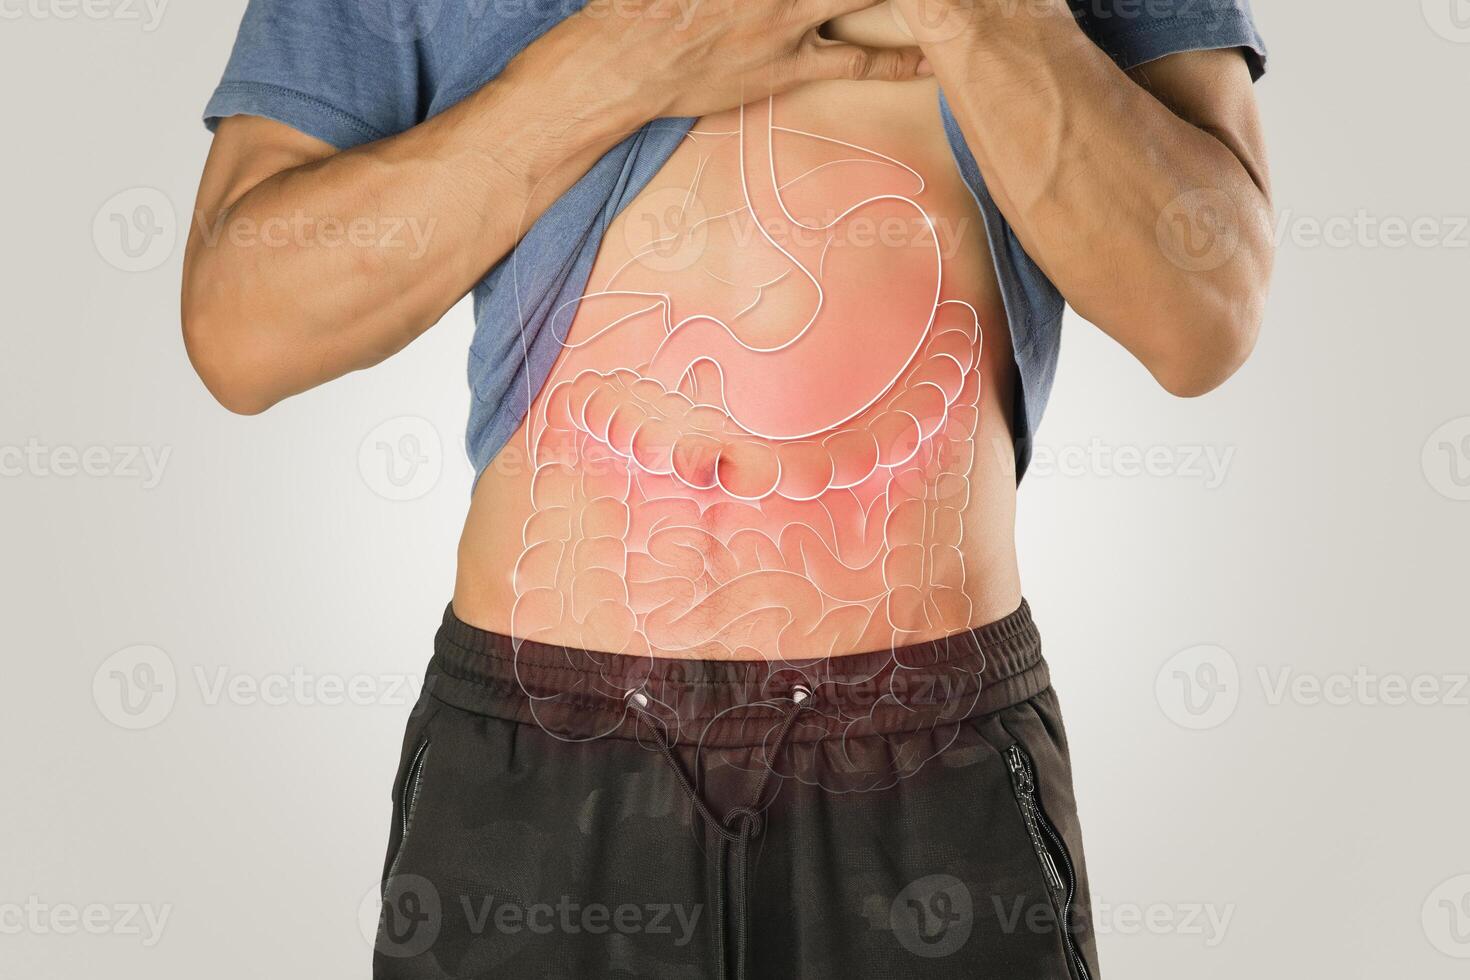 inre organ illustration på de manlig kropp mot en ljus grå bakgrund. foto